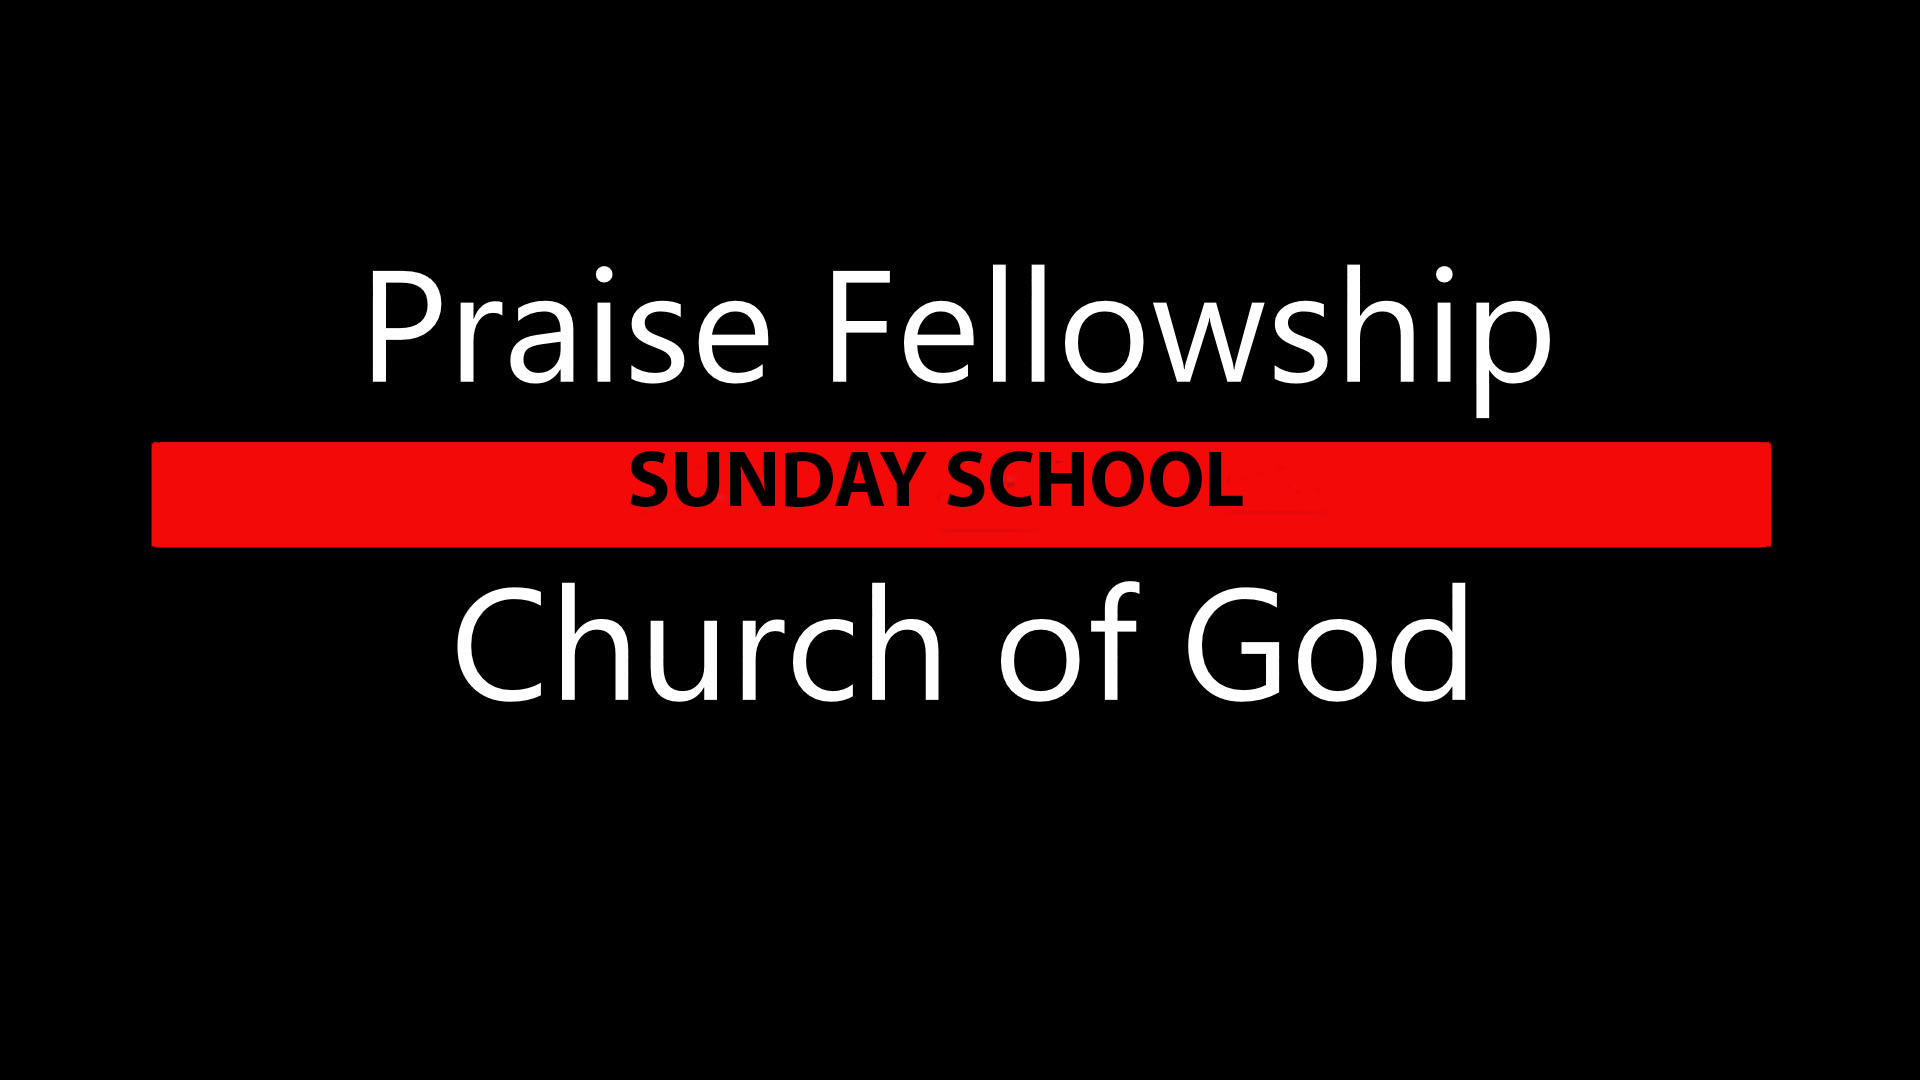 Praise FellowshipSSCHOOL.jpg